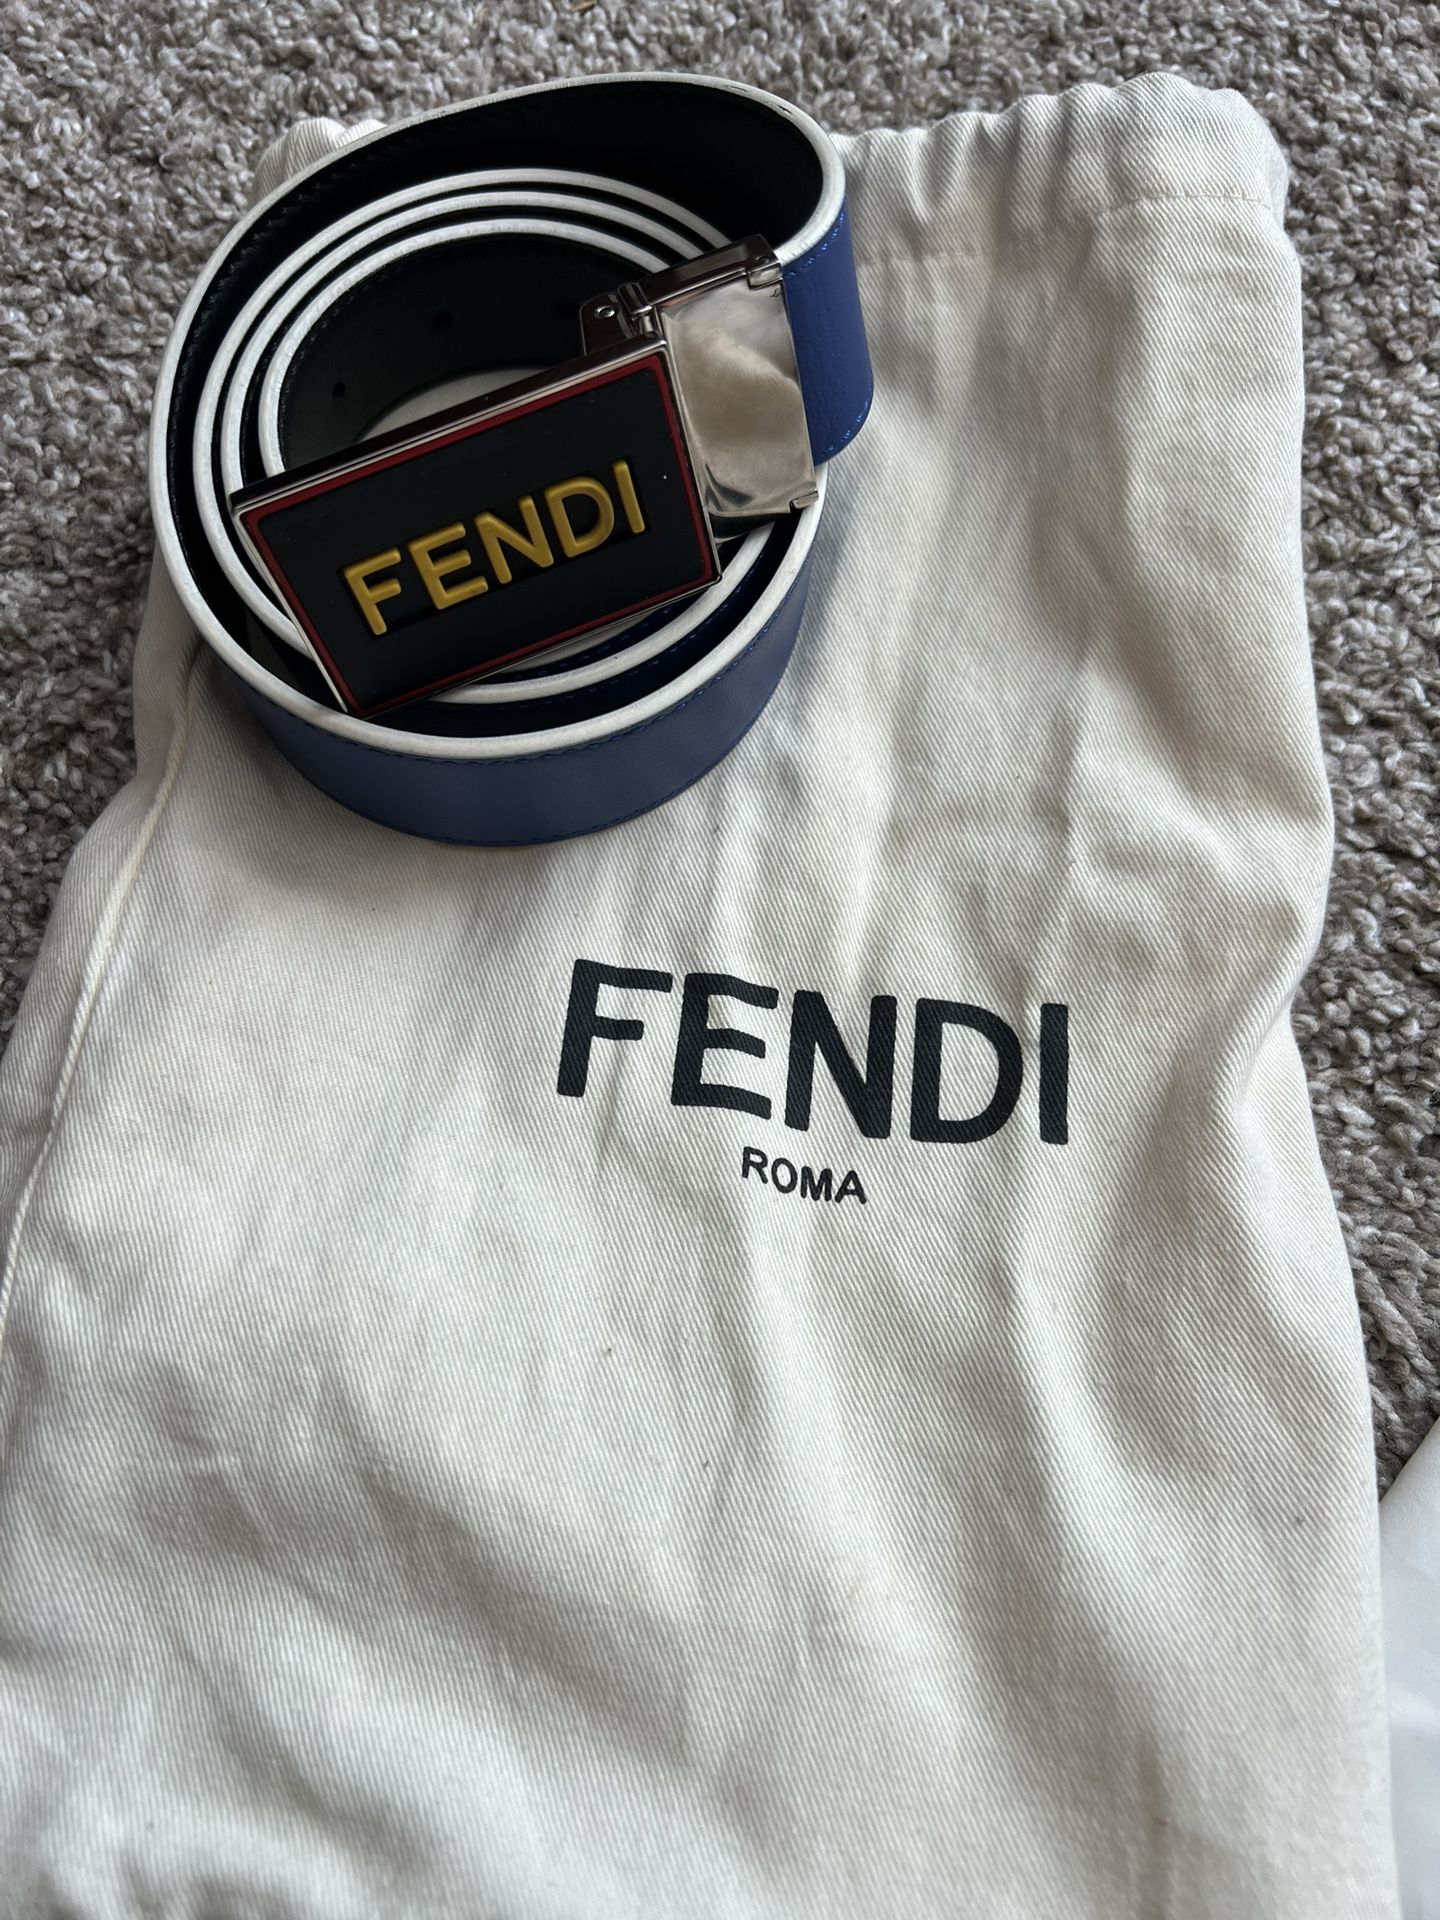 Fendi Reversible Spell Out Logo Men